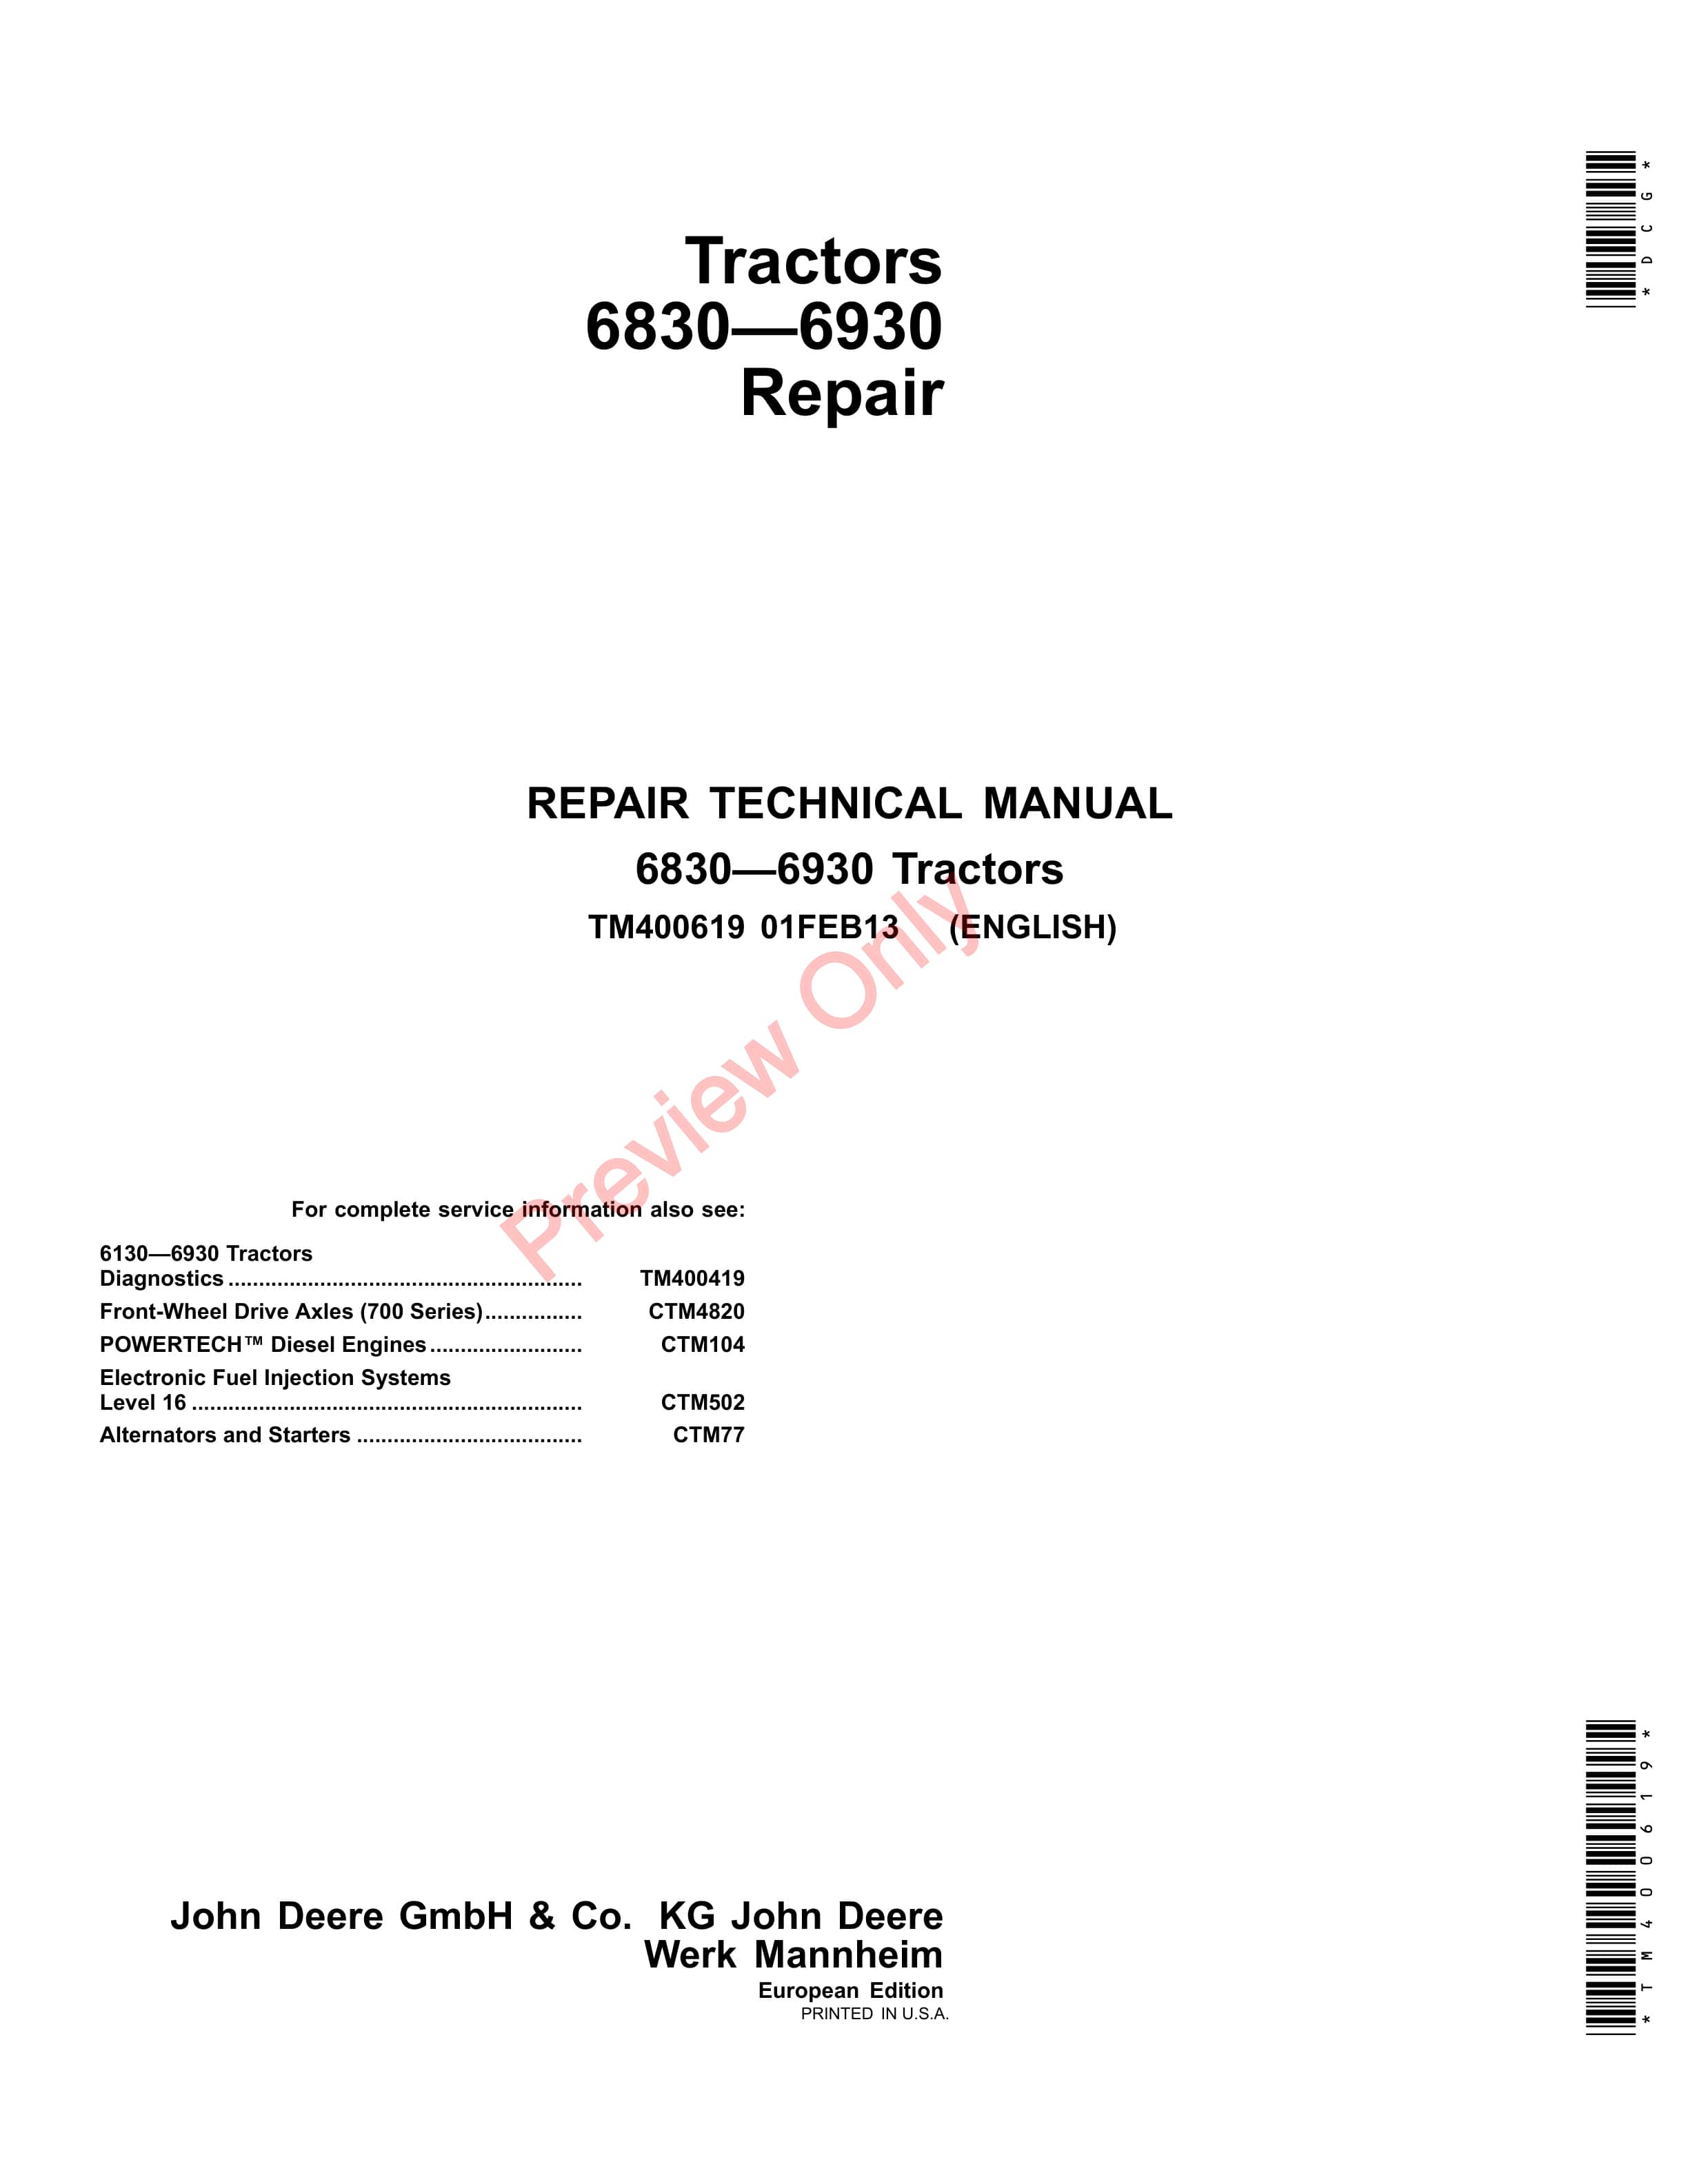 John Deere 6830 6930 Tractor Repair Technical Manual TM400619 01FEB13 1